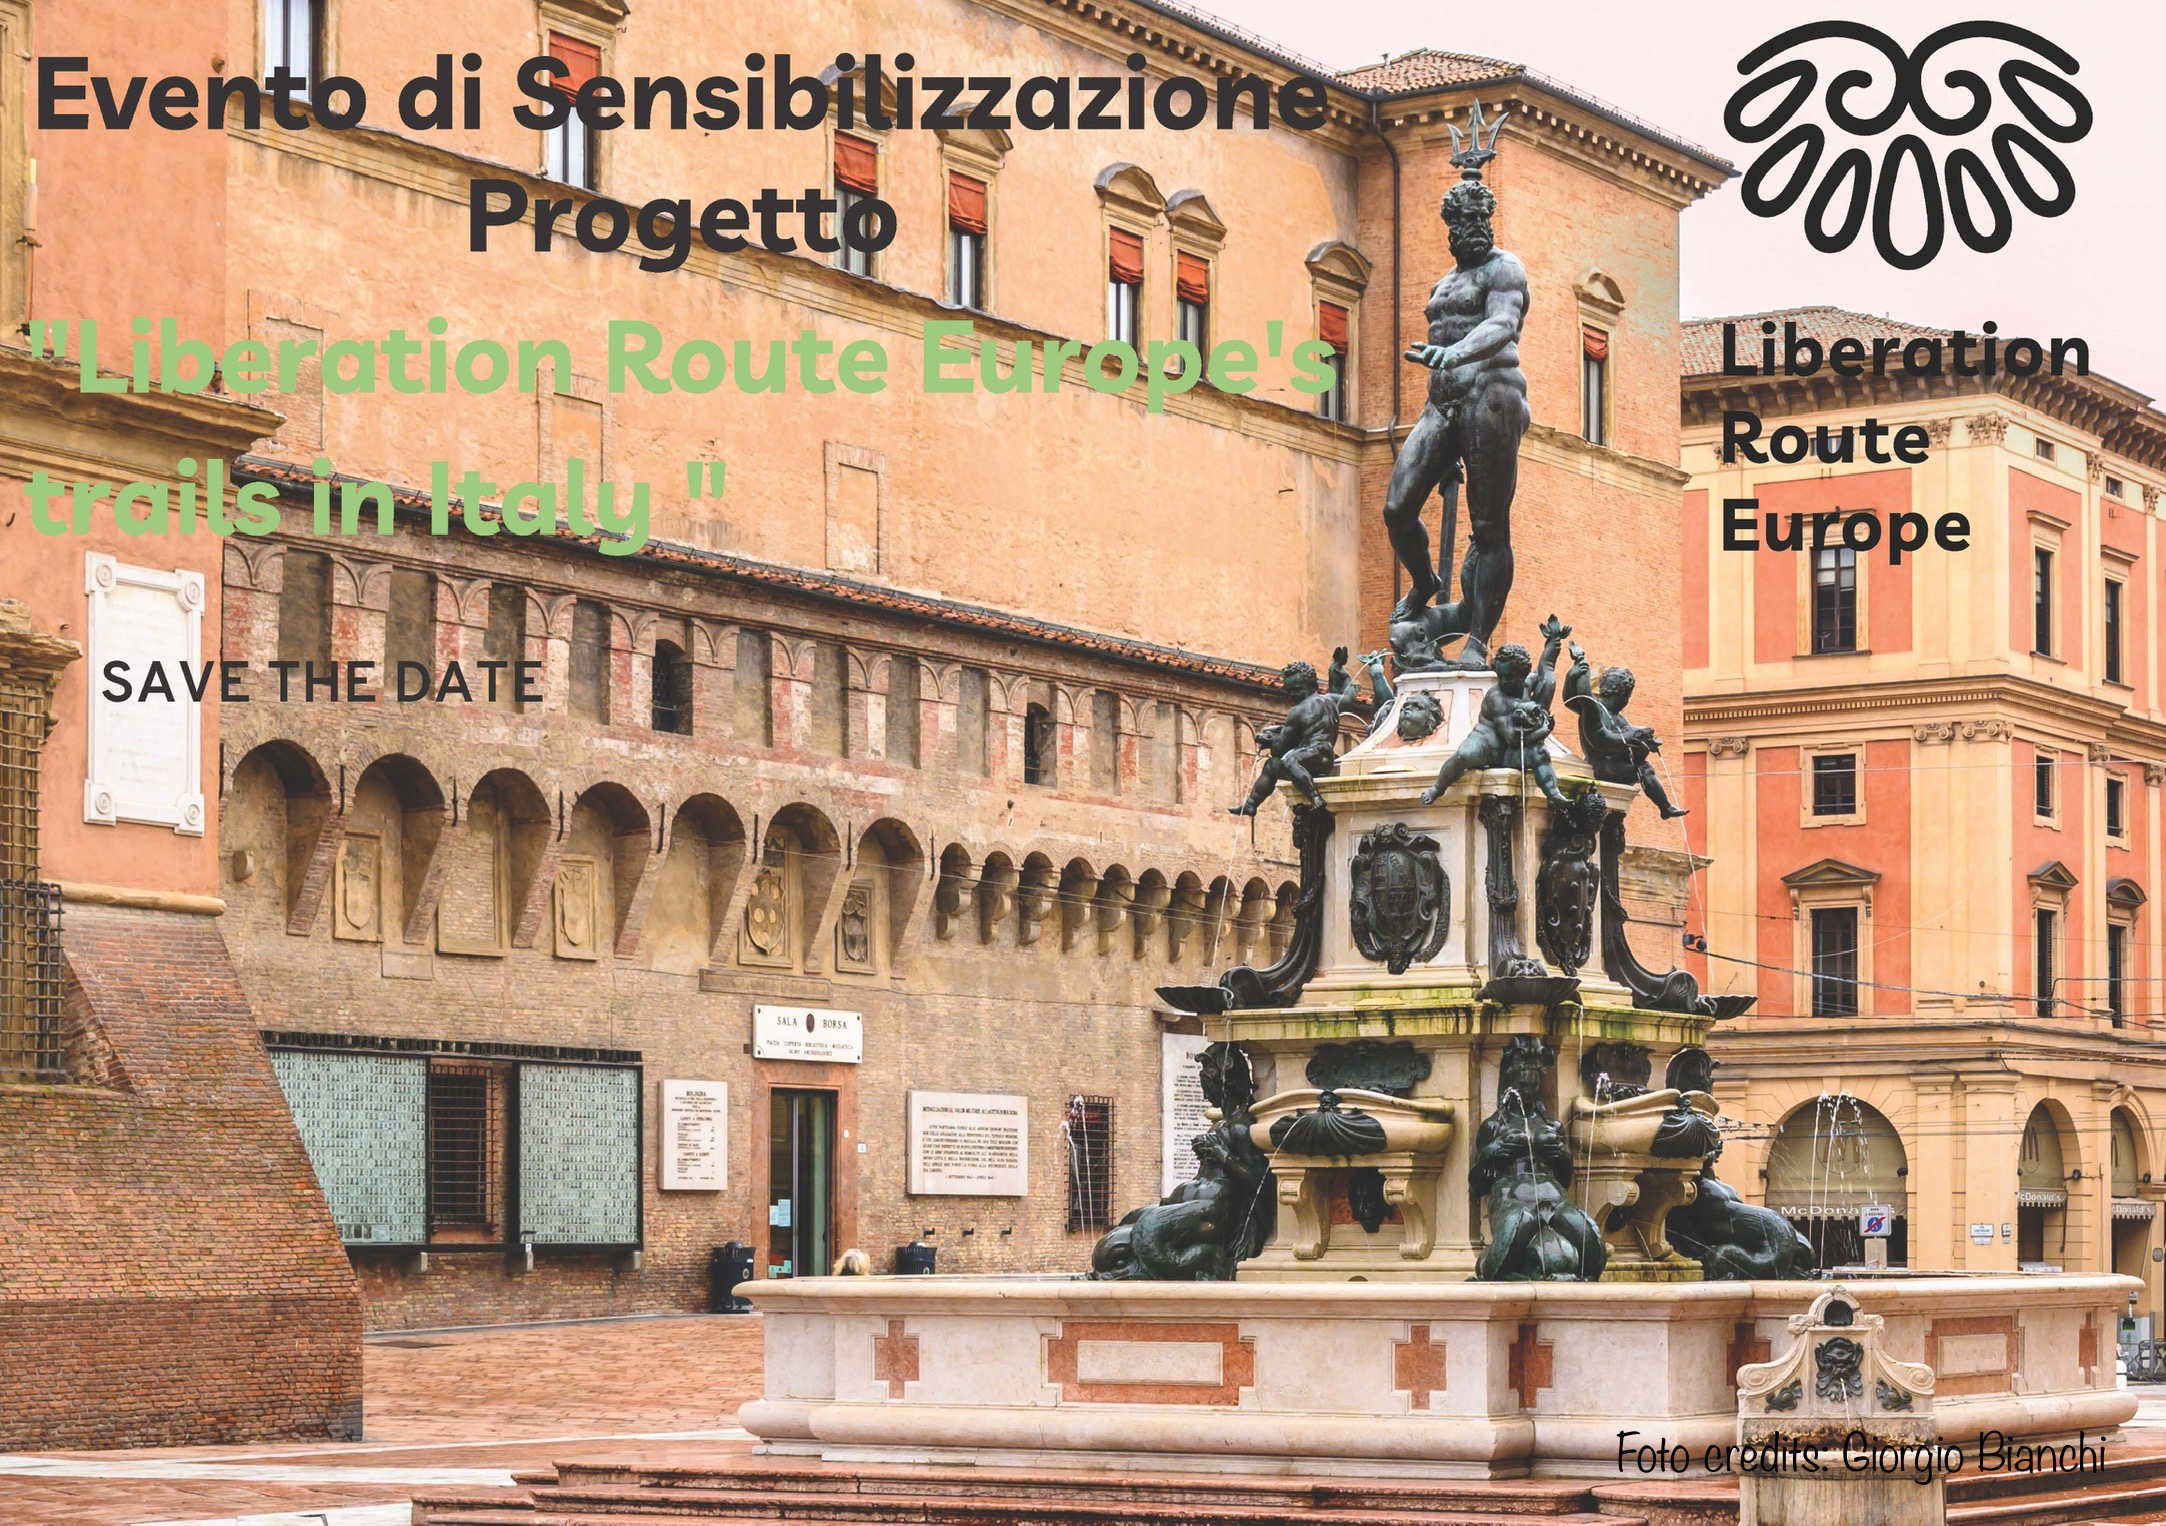 Save the date_Outreach event_Bologna_V01_Pagina_1 (1)